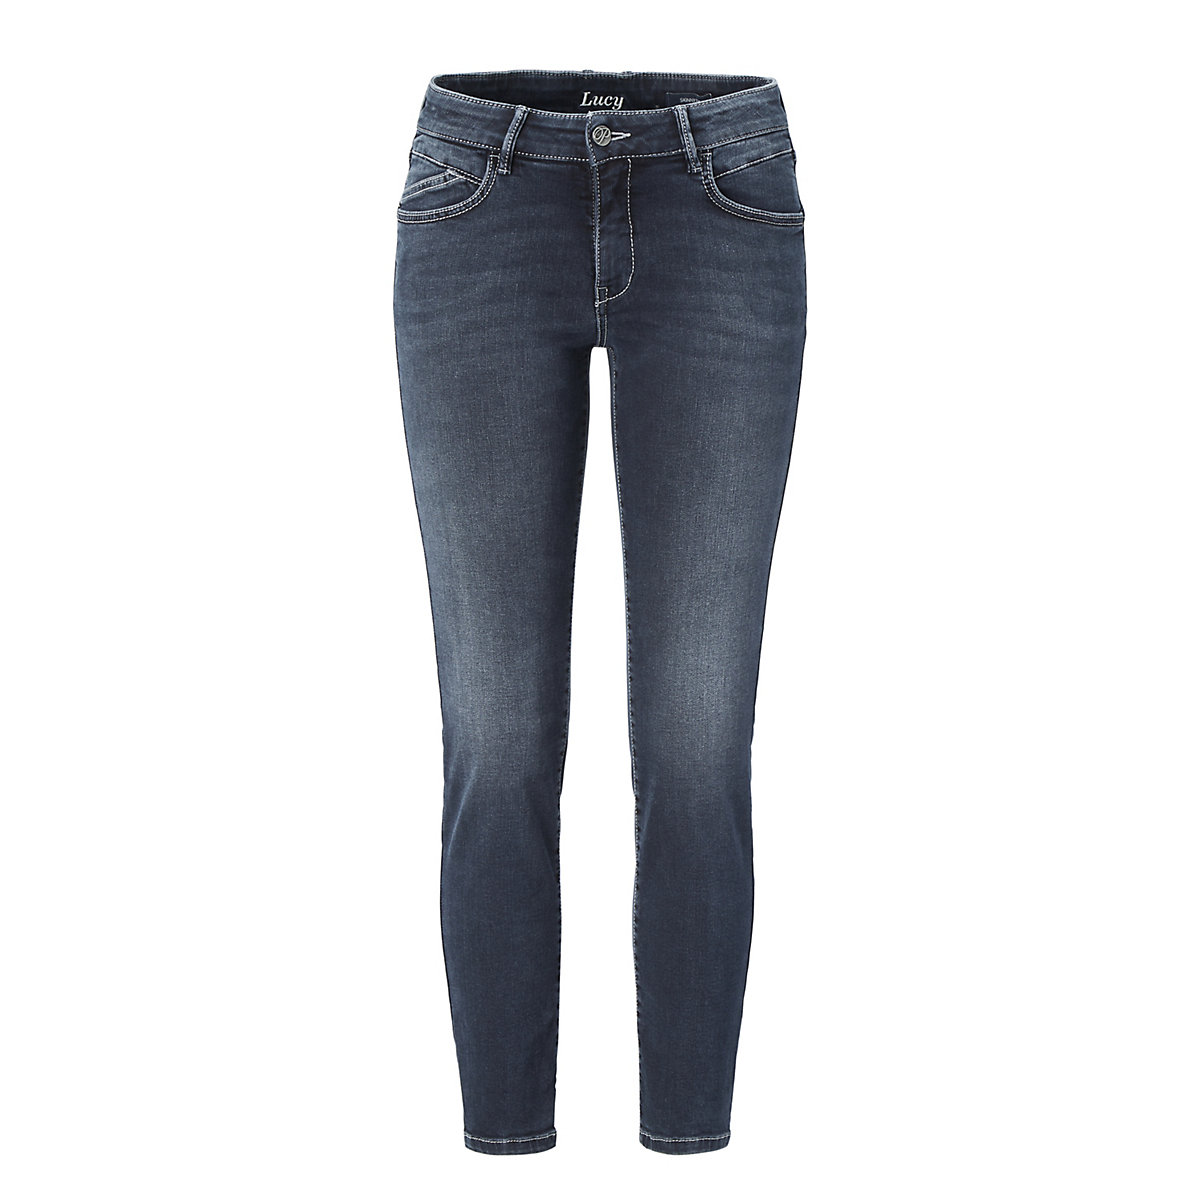 PADDOCK'S® Skinny-Fit Jeans mit Stretchanteil LUCY Saddle Stitch blau/schwarz